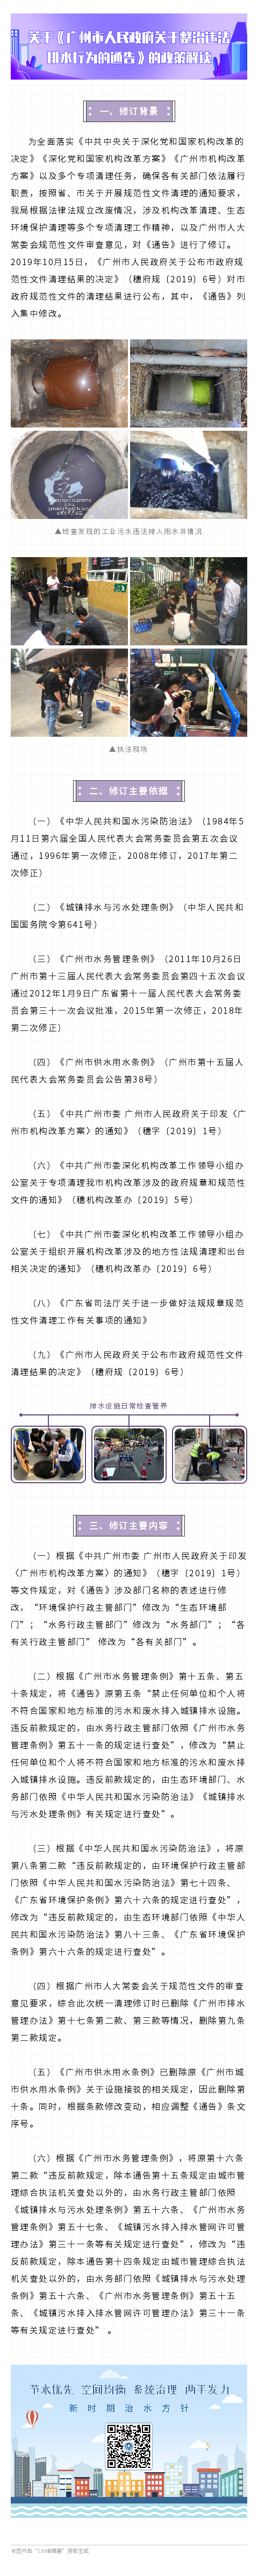 附件2-2：关于《广州市人民政府关于整治违法排水行为的通告》政策解读.png